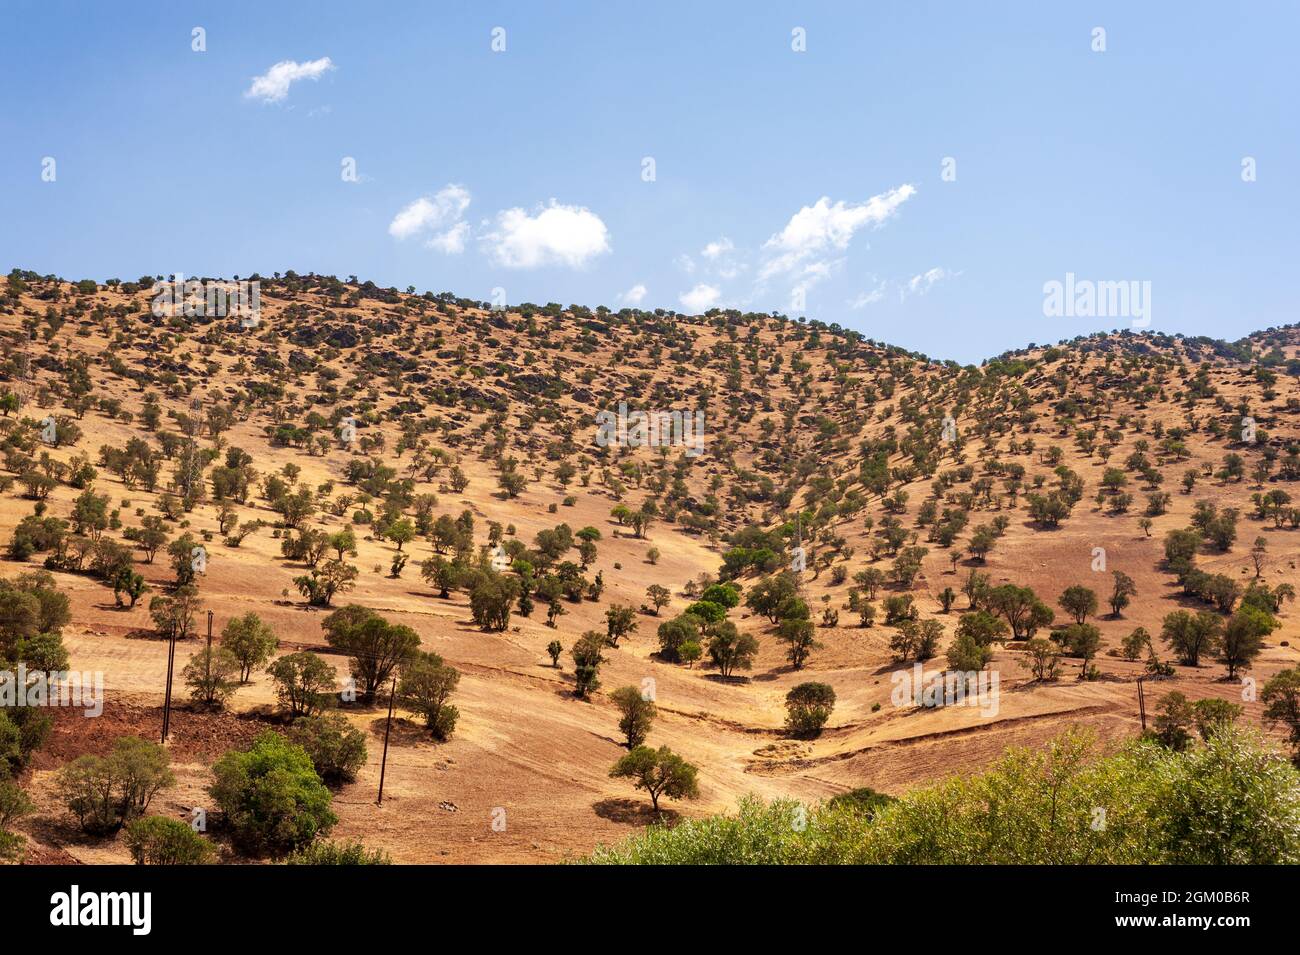 La formation de montagnes avec arbres, feuillage, herbe et ciel bleu dans la partie occidentale de l'iran, province du kurdistan, Iran Banque D'Images